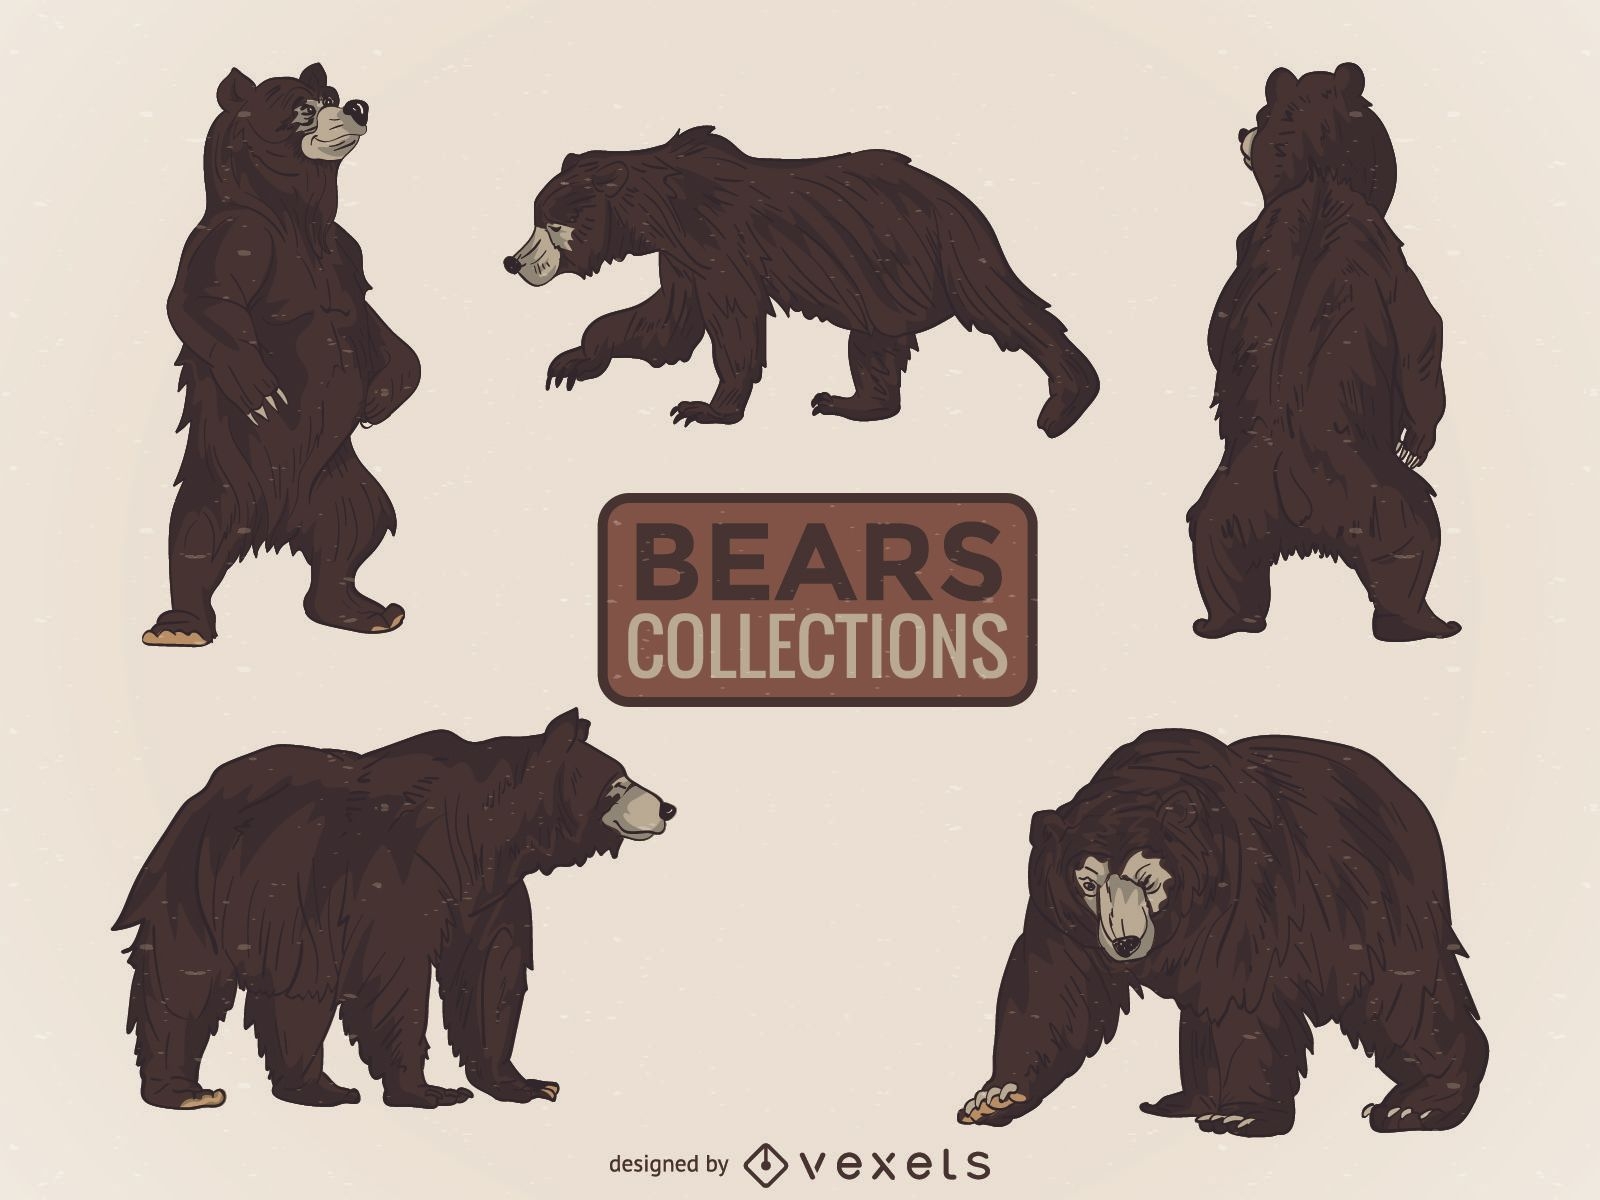 Colecci?n ilustrada de osos salvajes